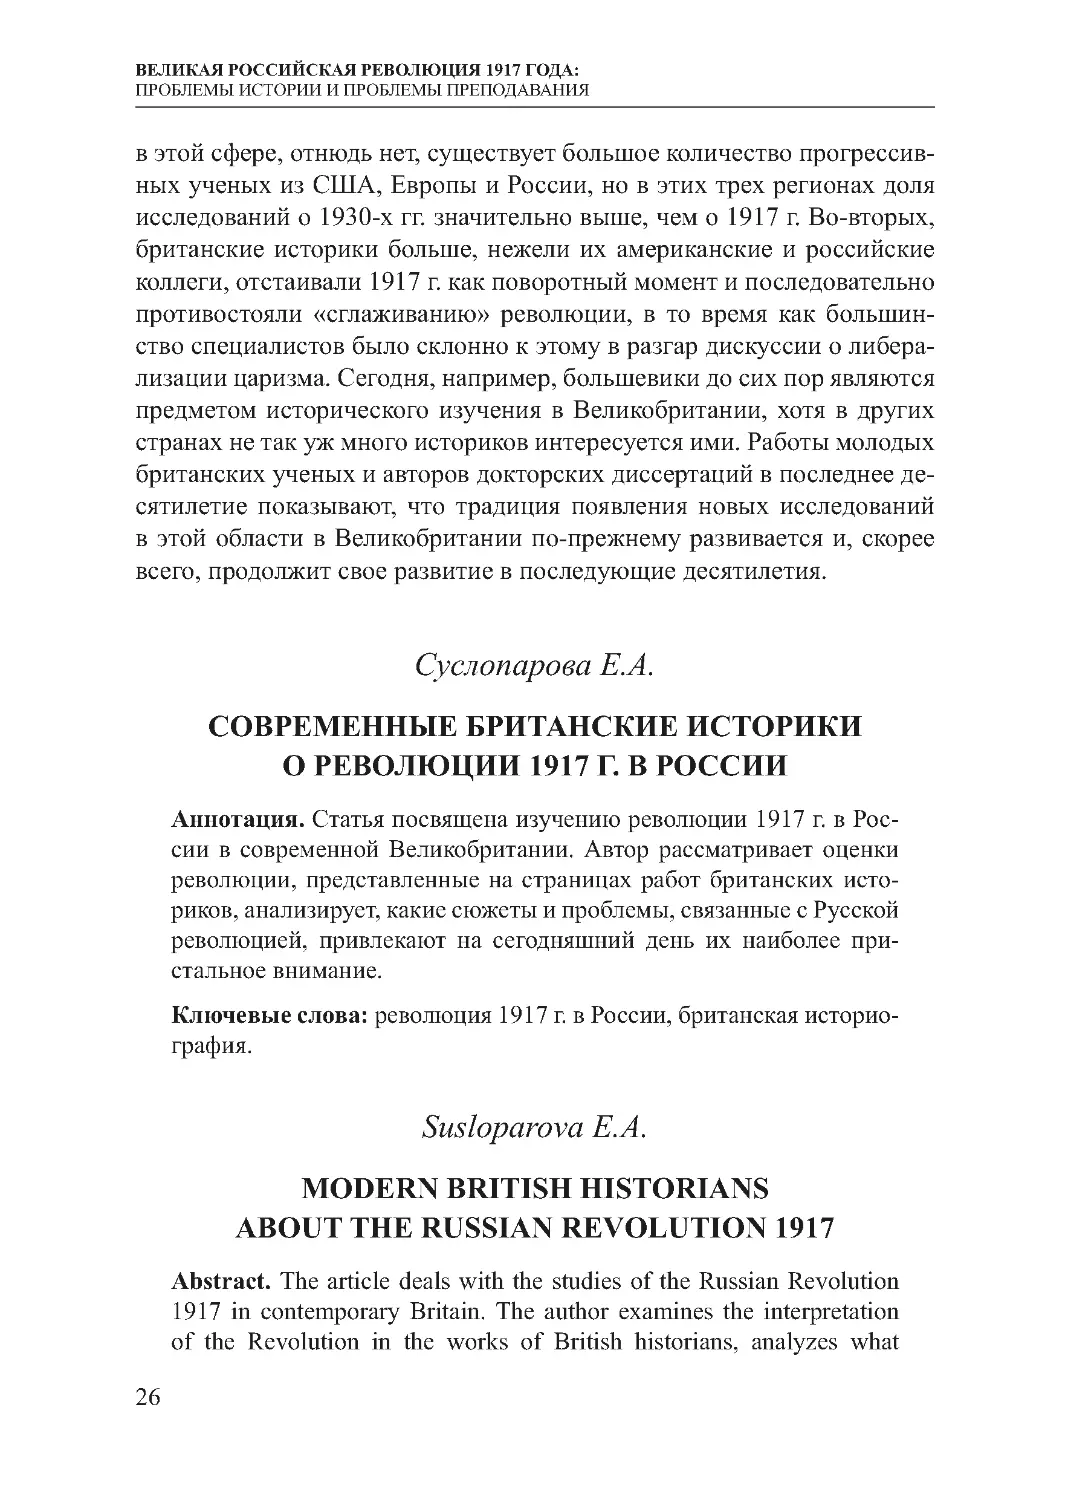 Суслопарова Е.А. Современные британские историки о революции 1917 г. в России